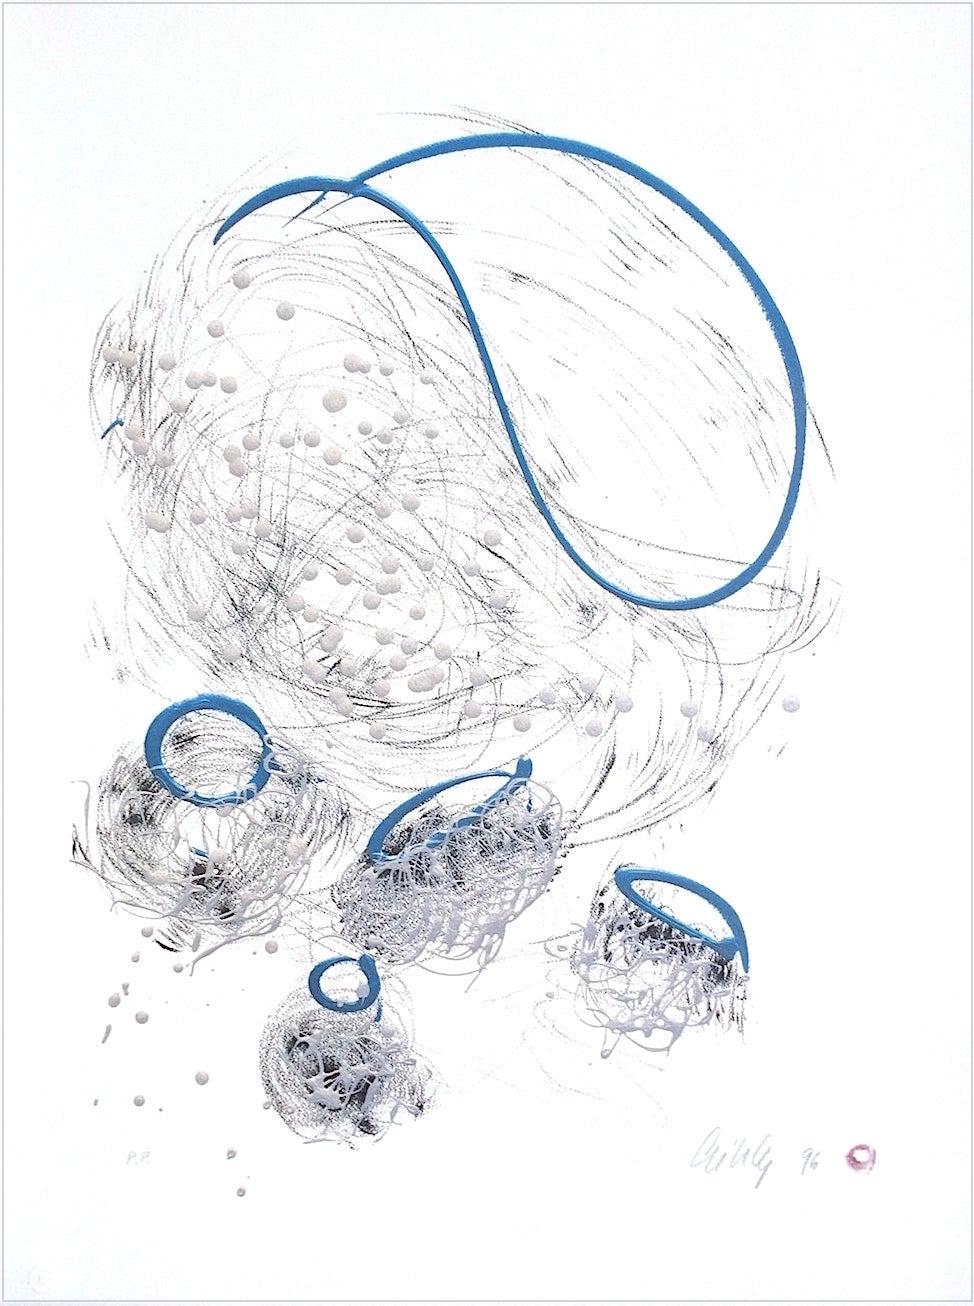 Abstract Print Dale Chihuly - Lithographie de forme abstraite dessinée en graphite, bleu perle, signée 